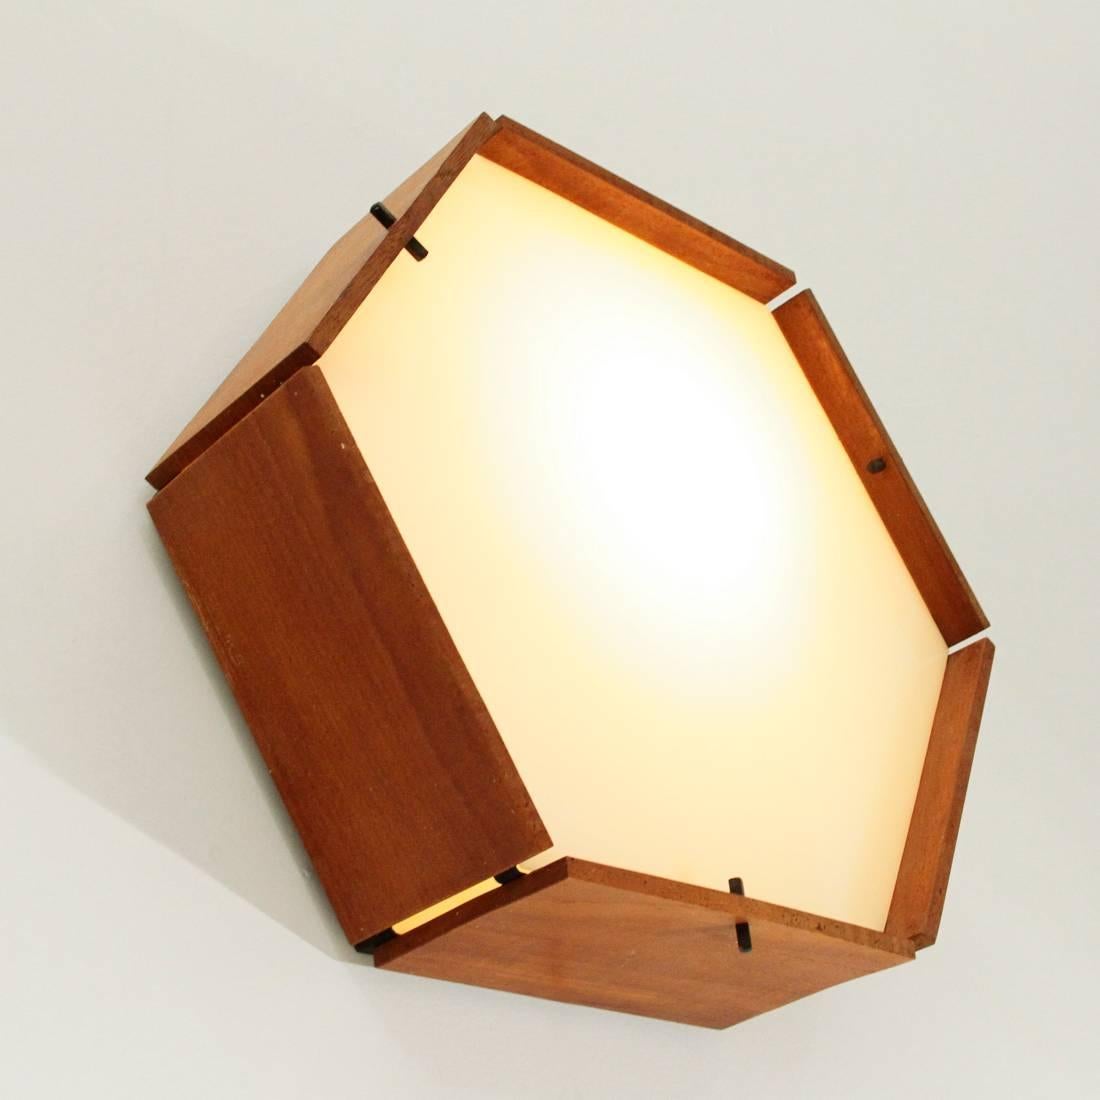 Italian Hexagonal Teak and Perspex Ceiling Lamp, Applique, 1950s